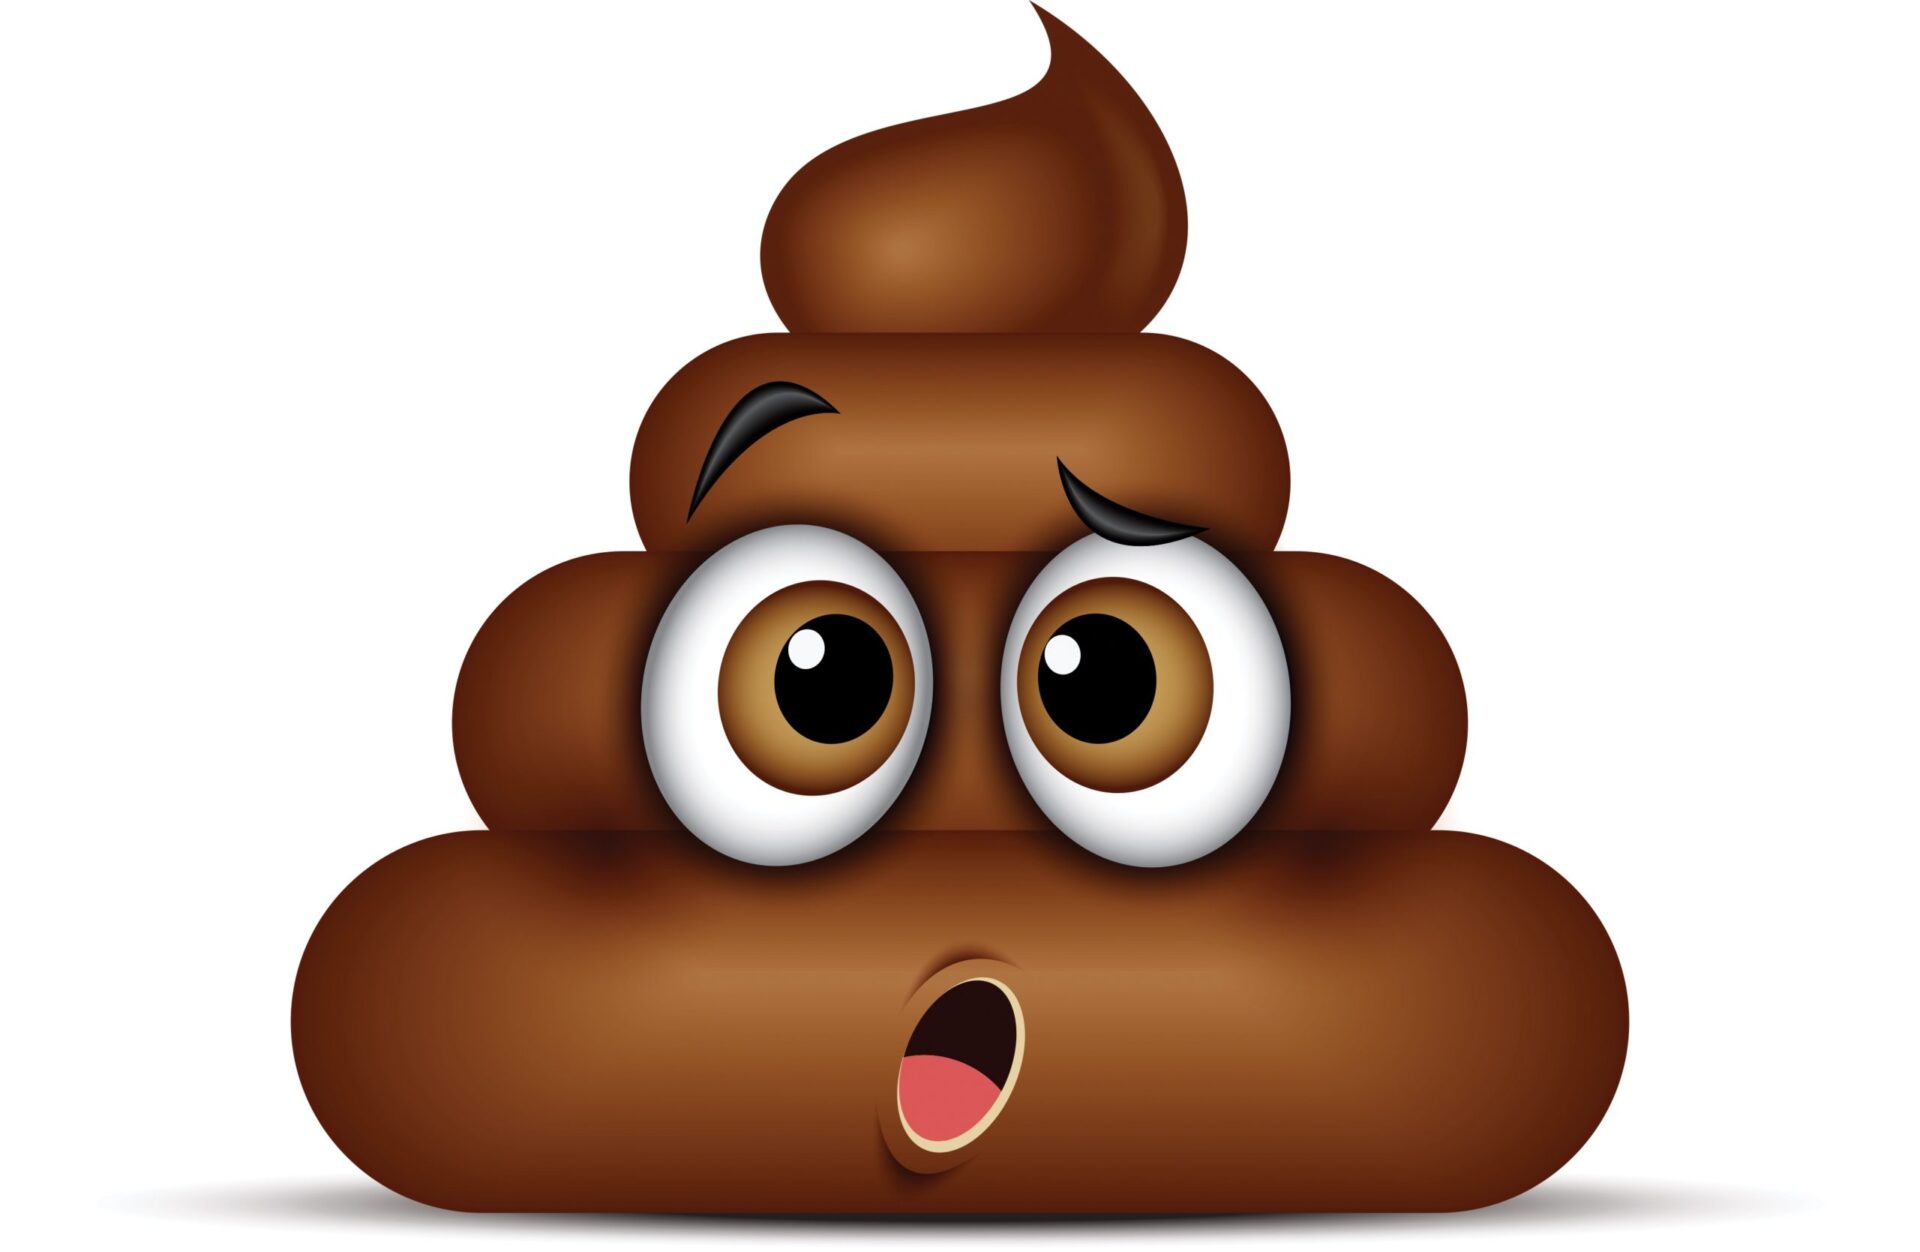 Poop-emoji-scaled.jpg